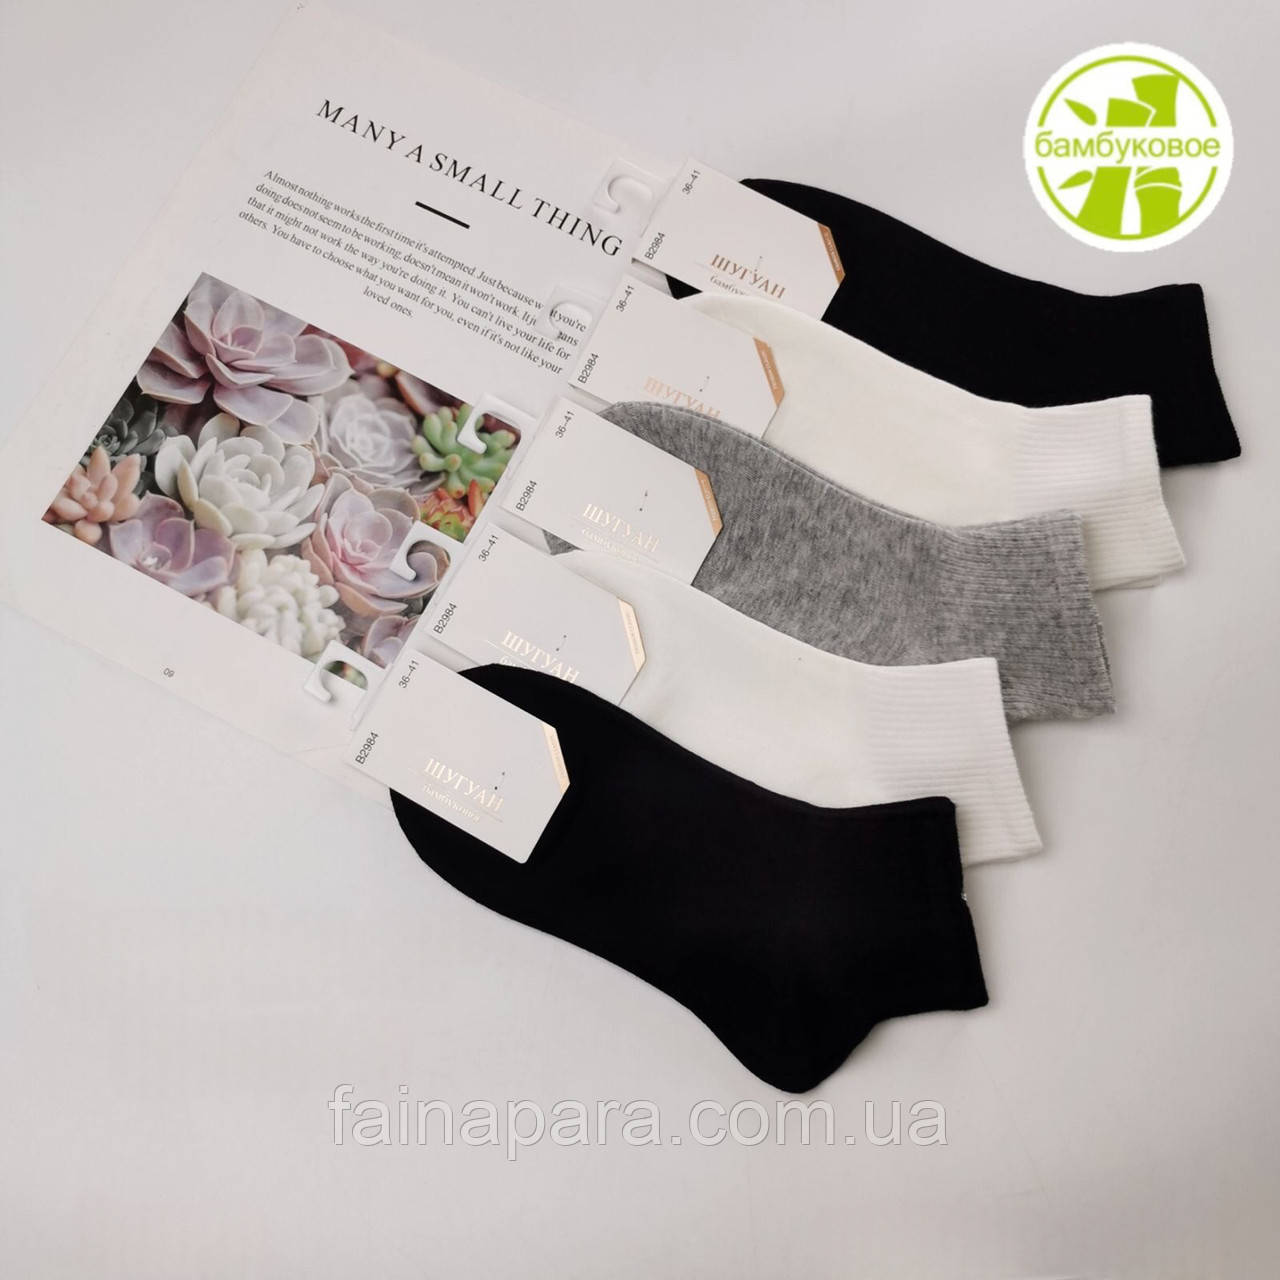 Короткі жіночі бамбукові шкарпетки (резинка в рубчик) Шугуан Чорний